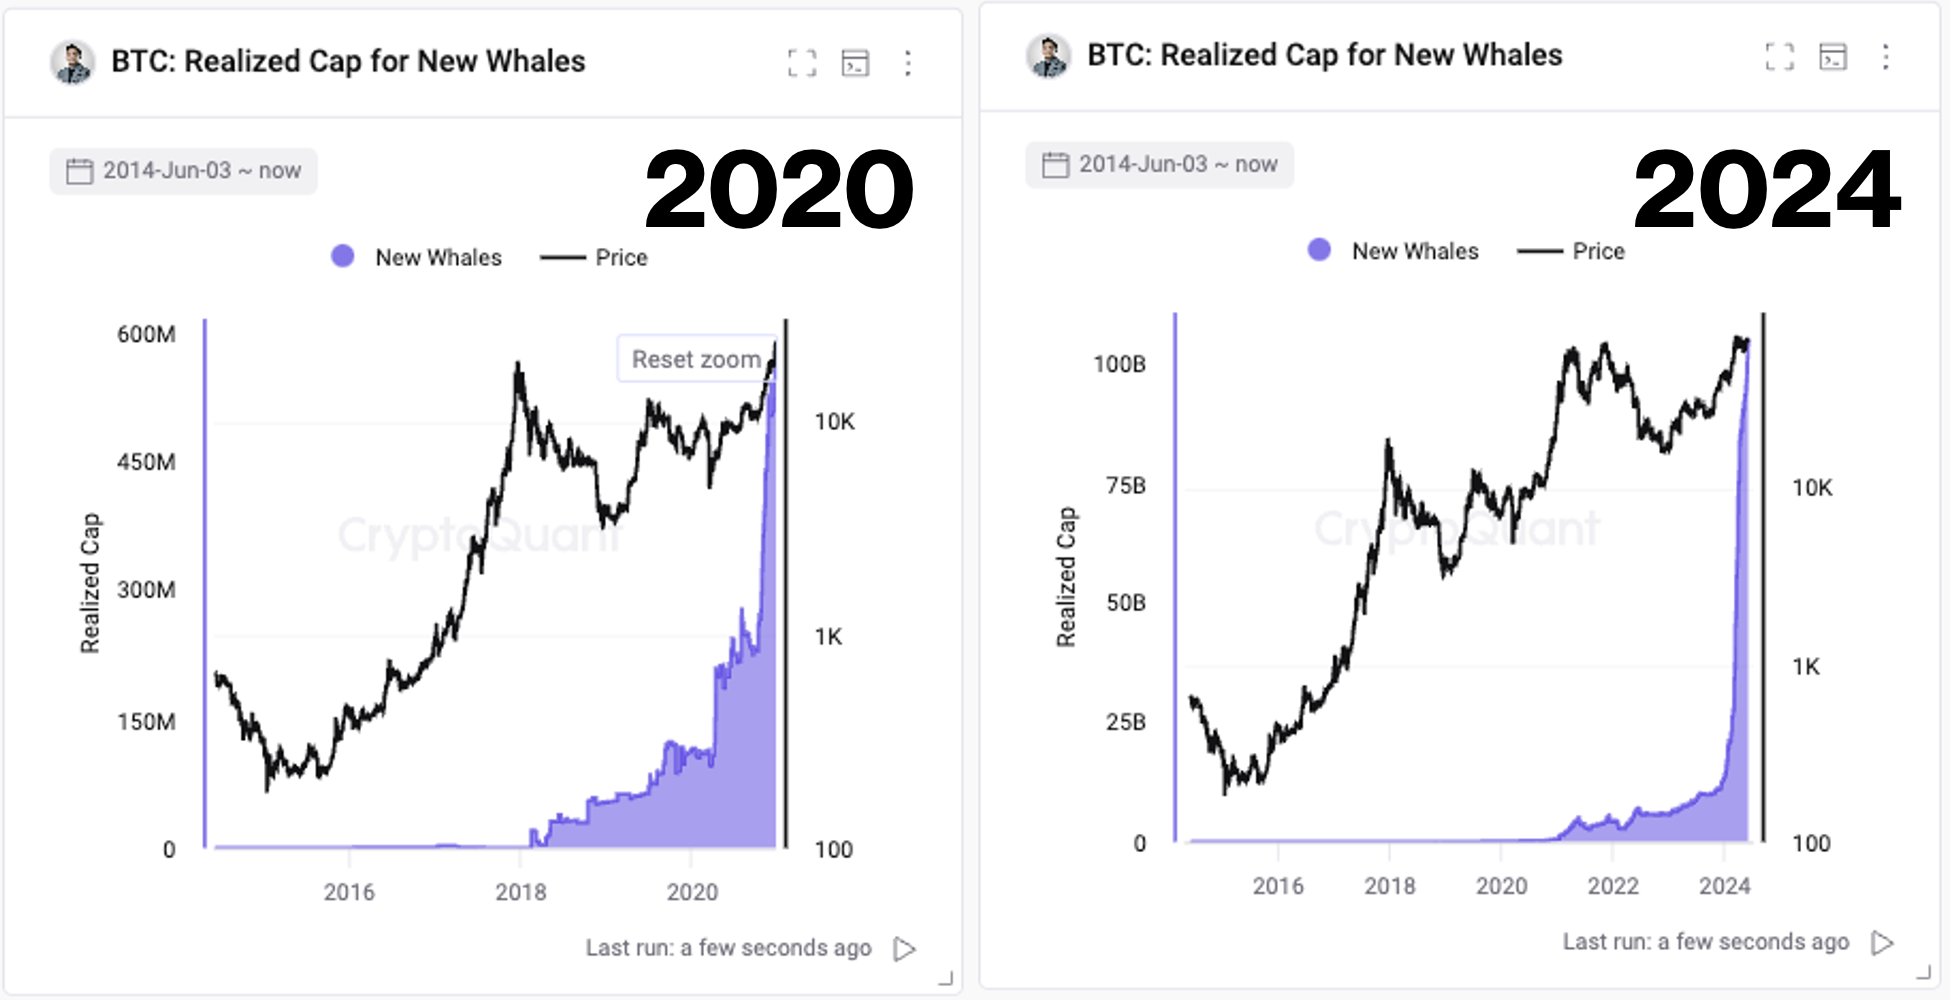  bitcoin mid-2020 state current between market behavior 